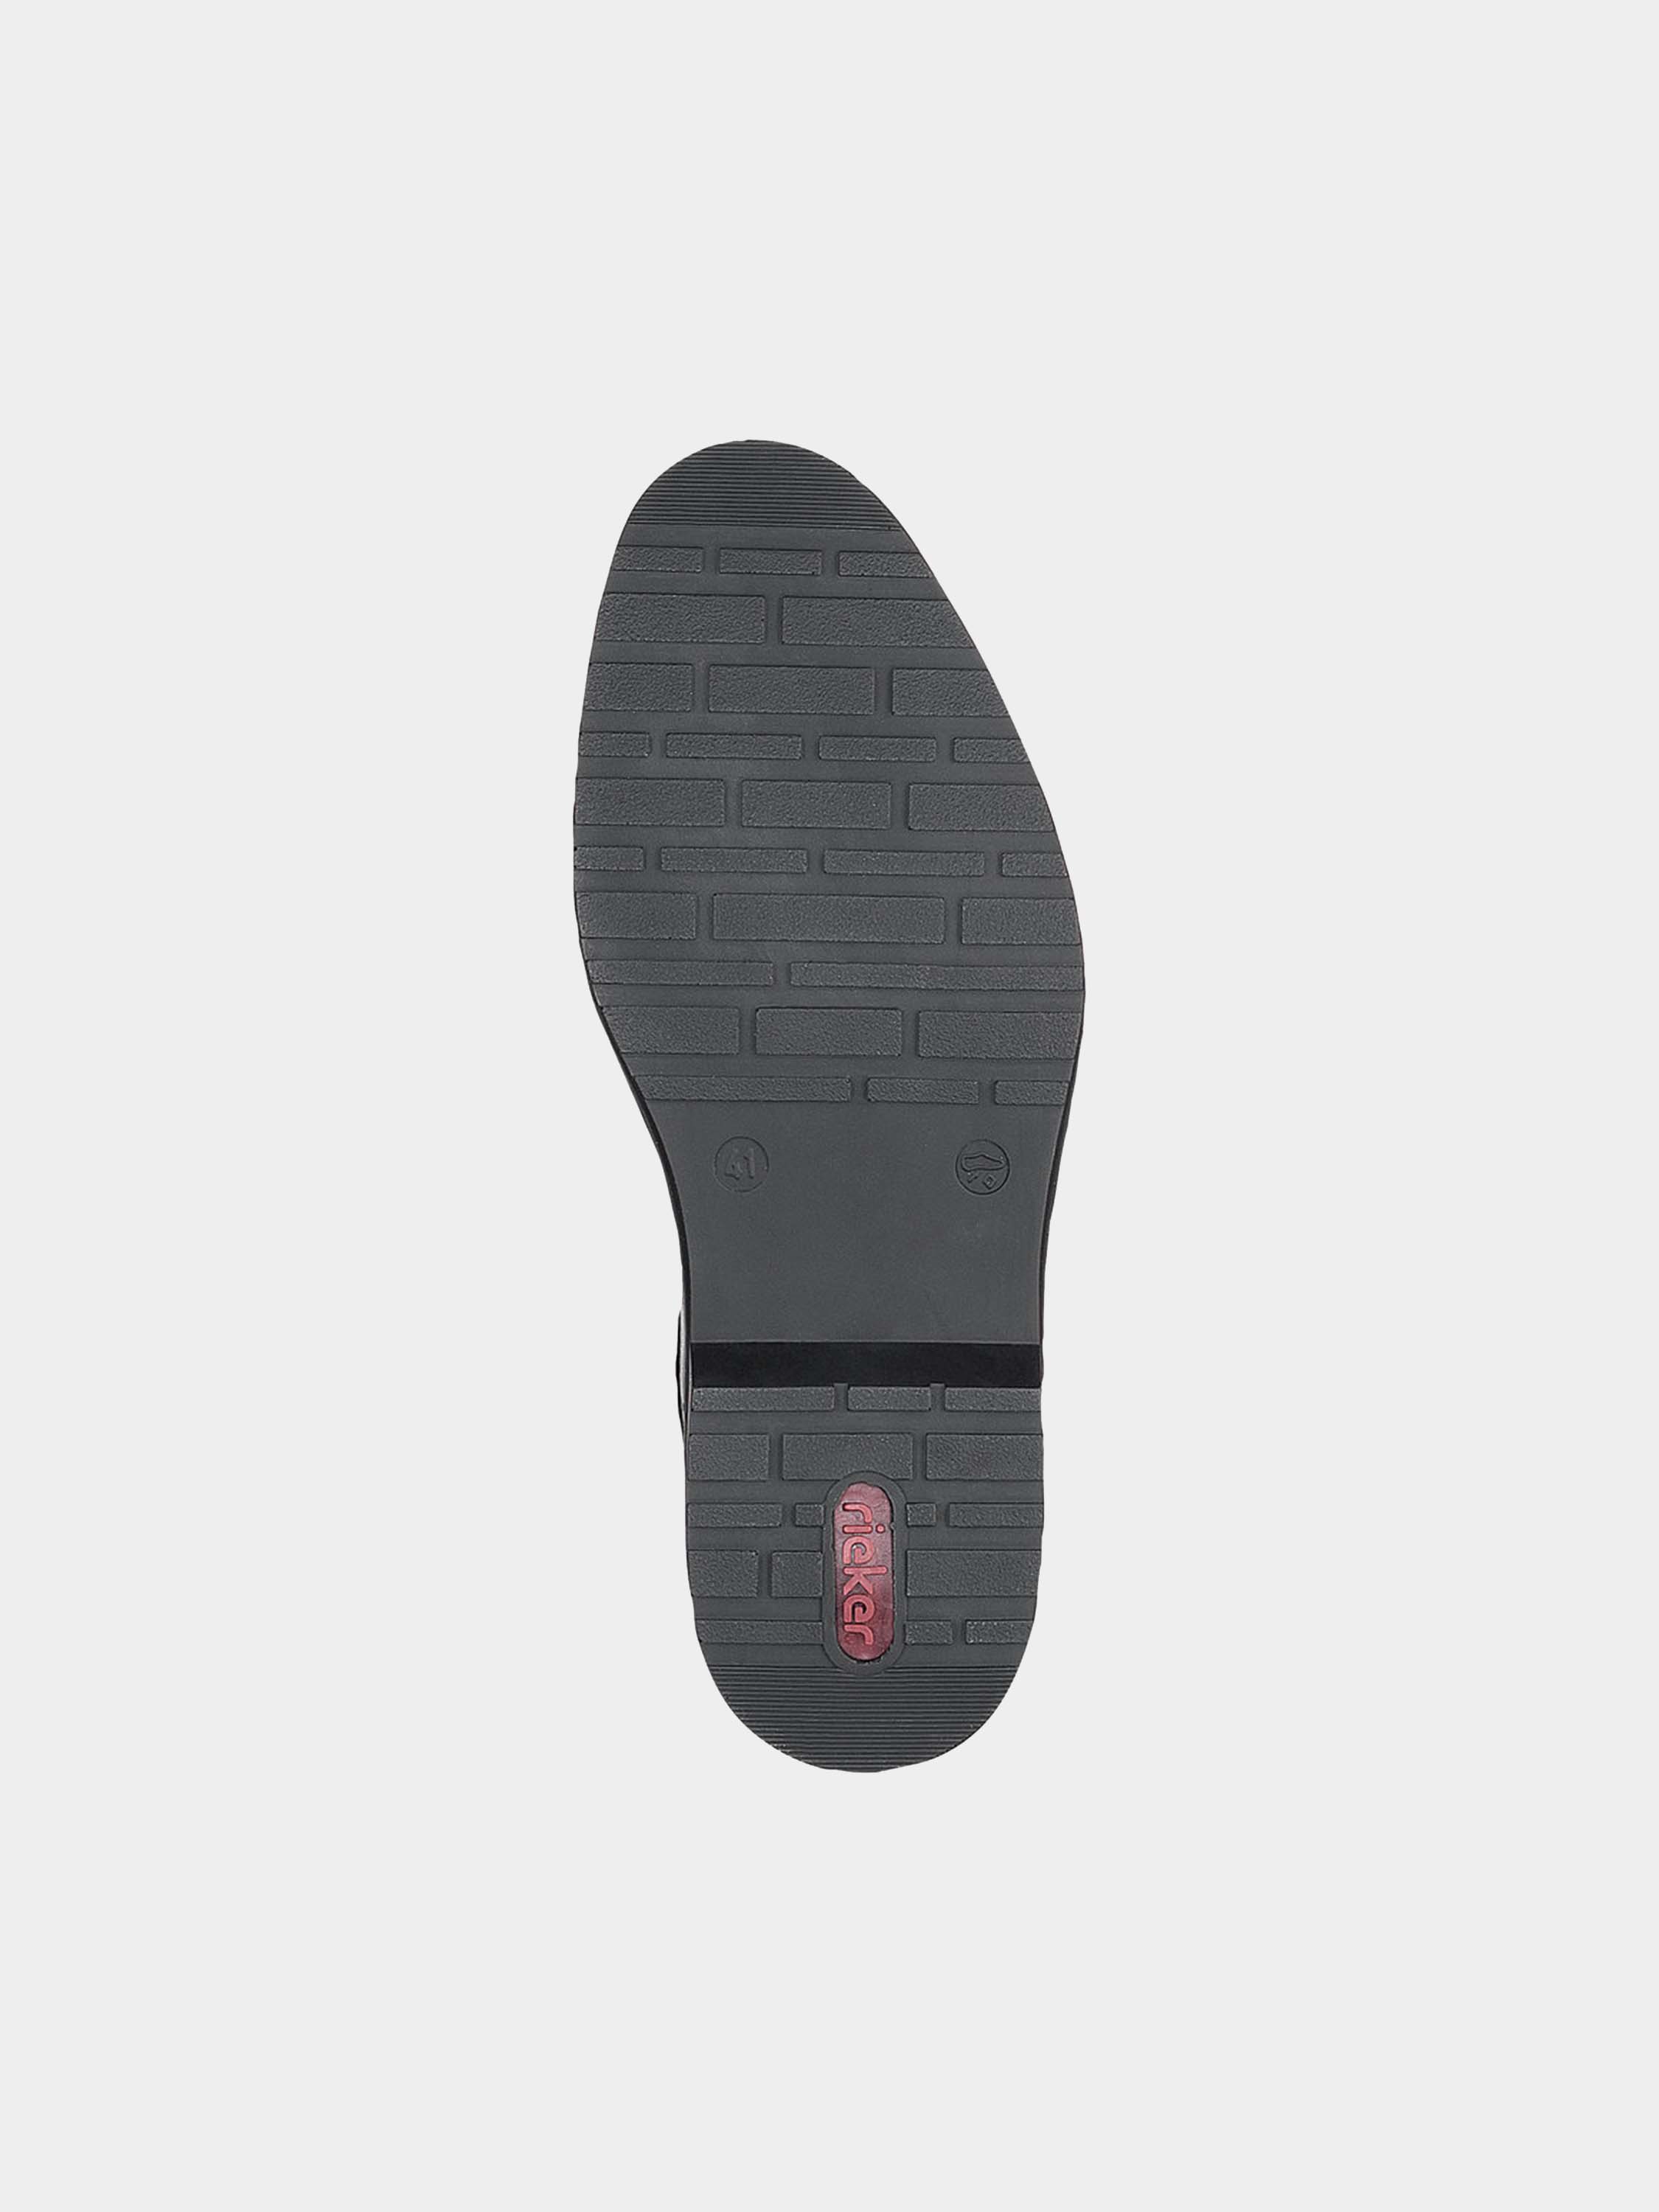 Rieker 16570 Men's Velcro Strap Formal Shoes #color_Black